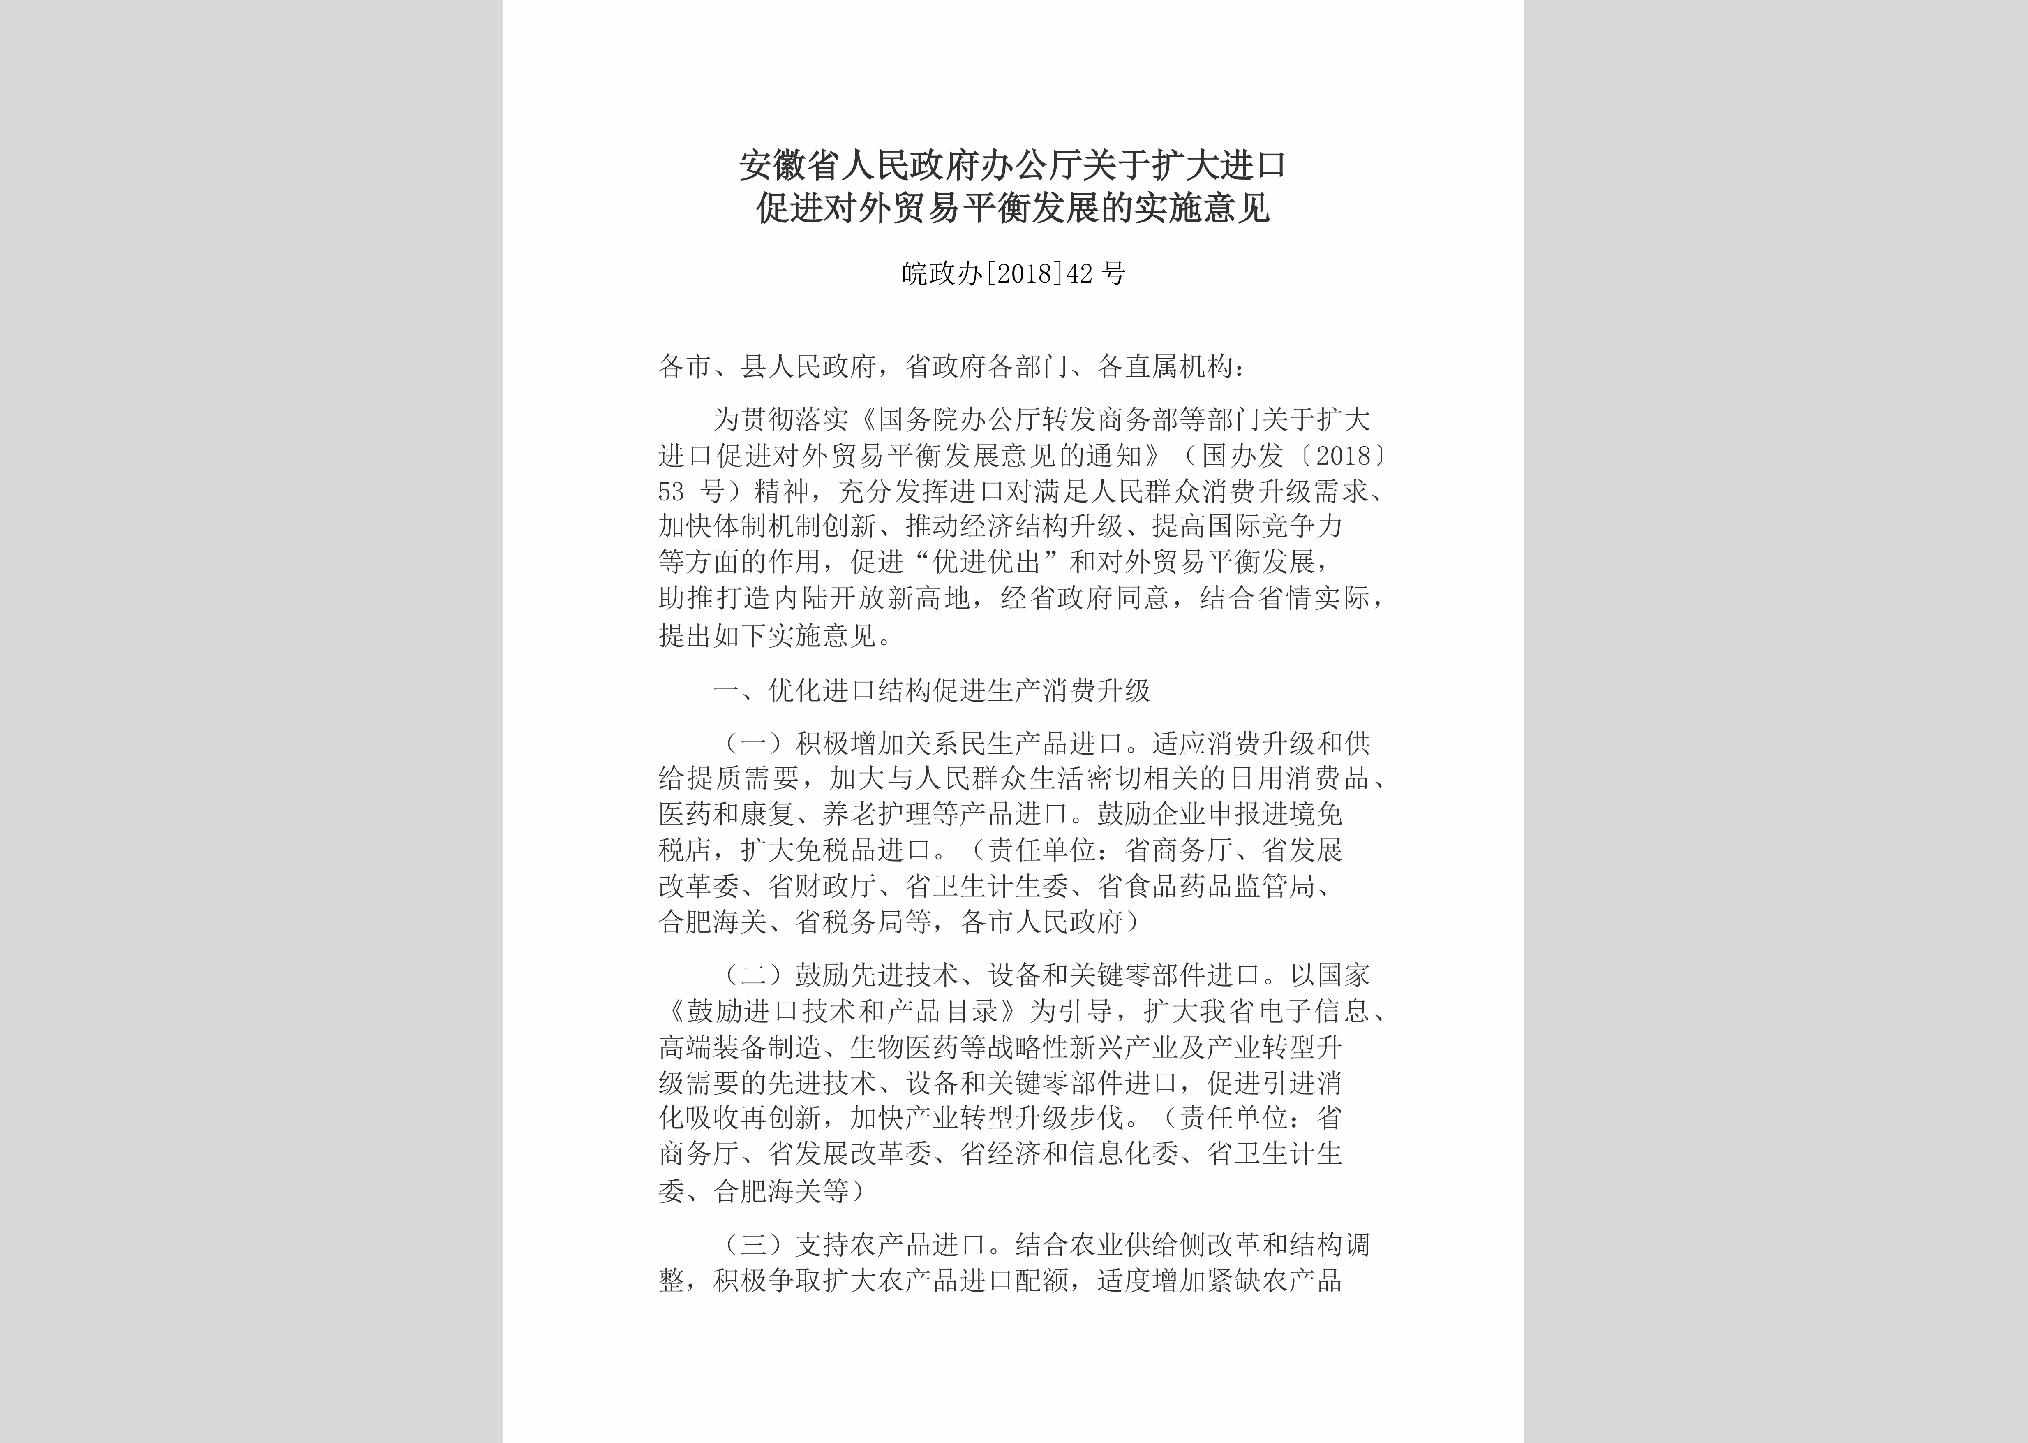 皖政办[2018]42号：安徽省人民政府办公厅关于扩大进口促进对外贸易平衡发展的实施意见